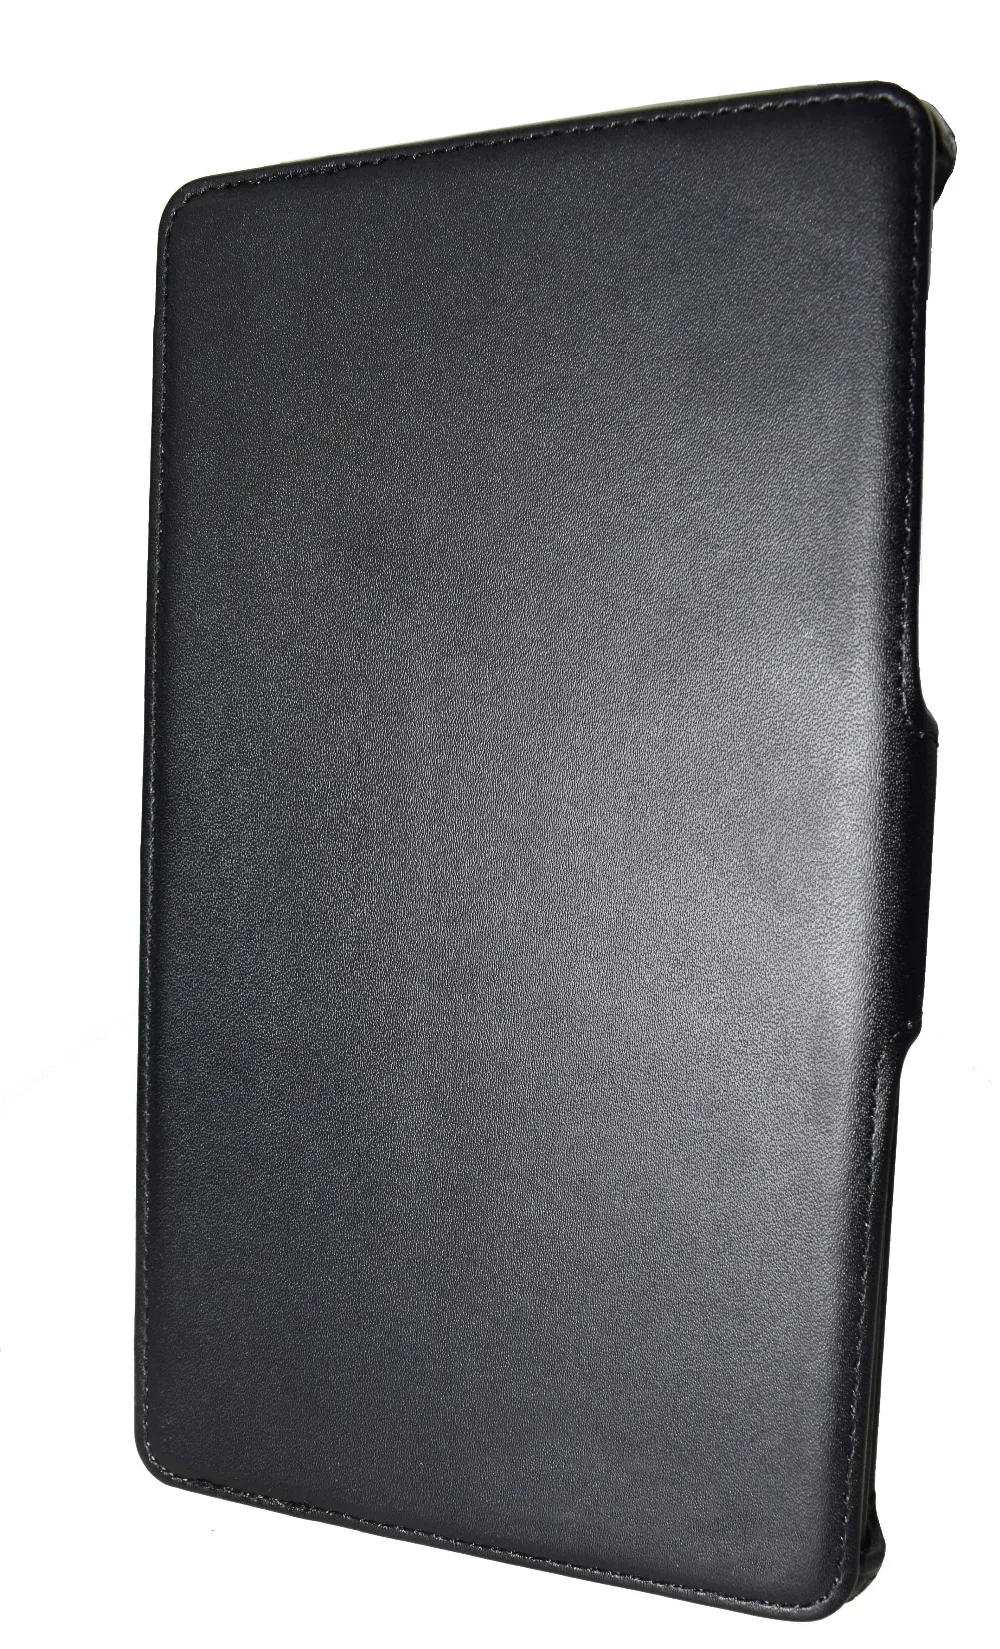 Мульти-ангел Стенд смарт-чехол для Google Nexus 7 2013 FHD 2nd Обложка книги чехол с магнитом Авто Пробуждение/сон(не для Nexus 7 1st